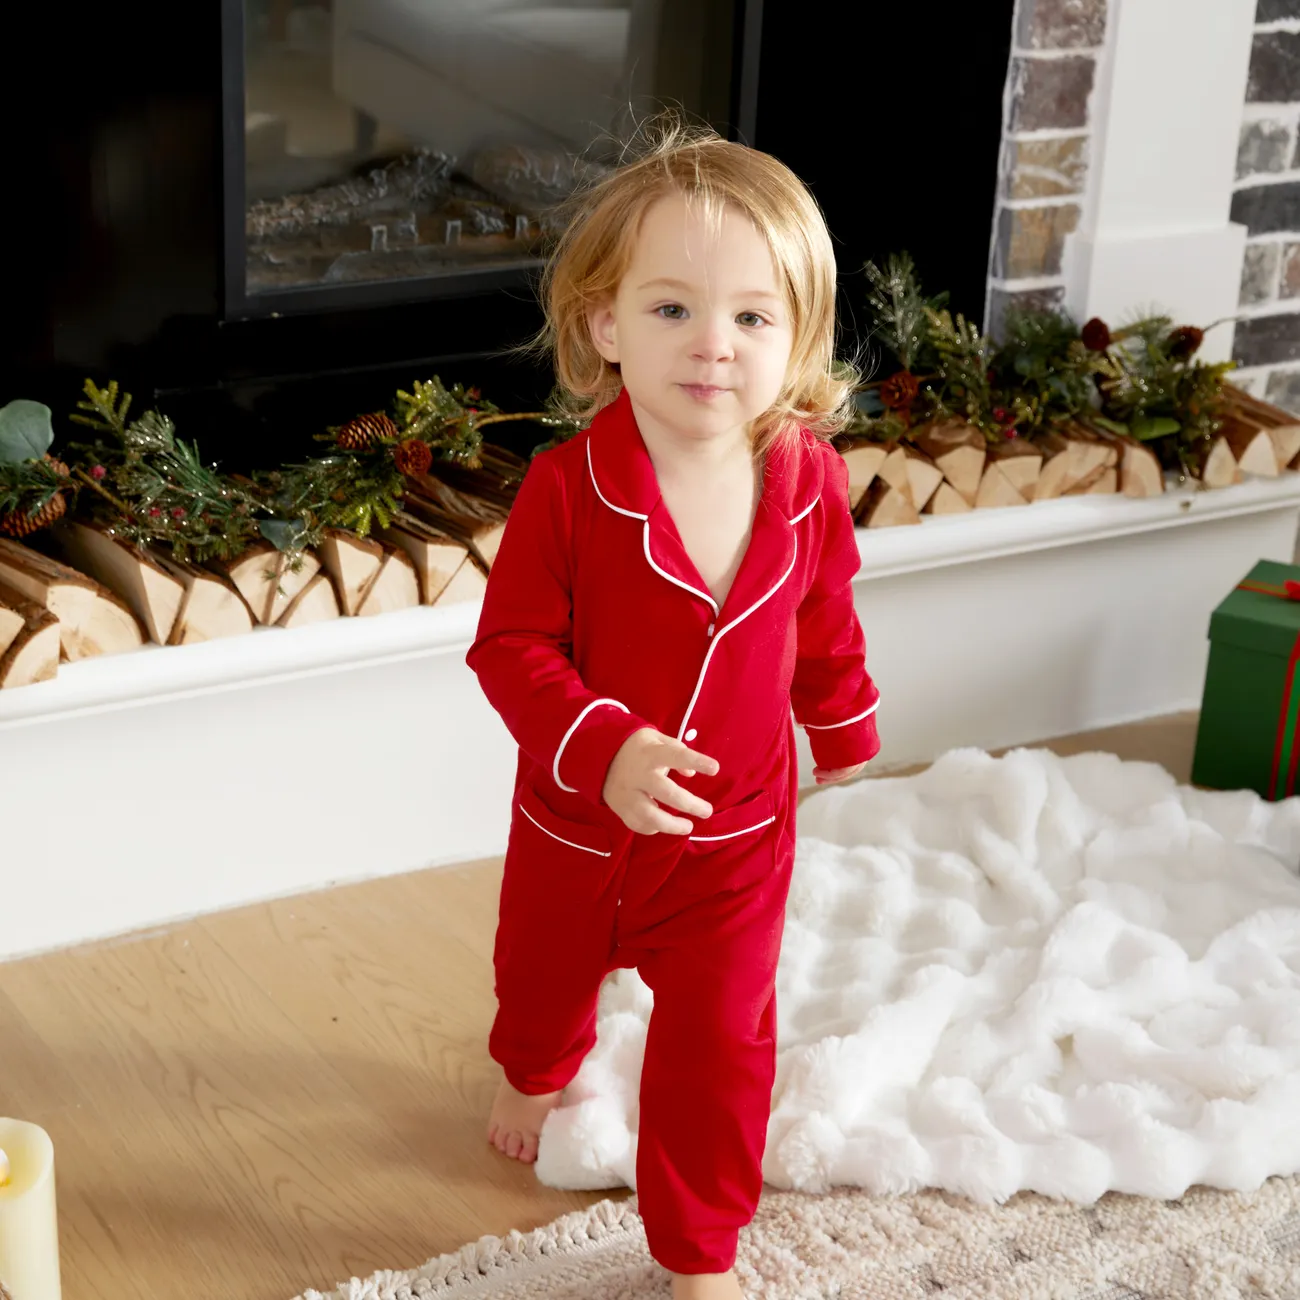 Bébé Fille/Garçon Enfantin Noël Pyjama De Couleur Unie Rouge big image 1